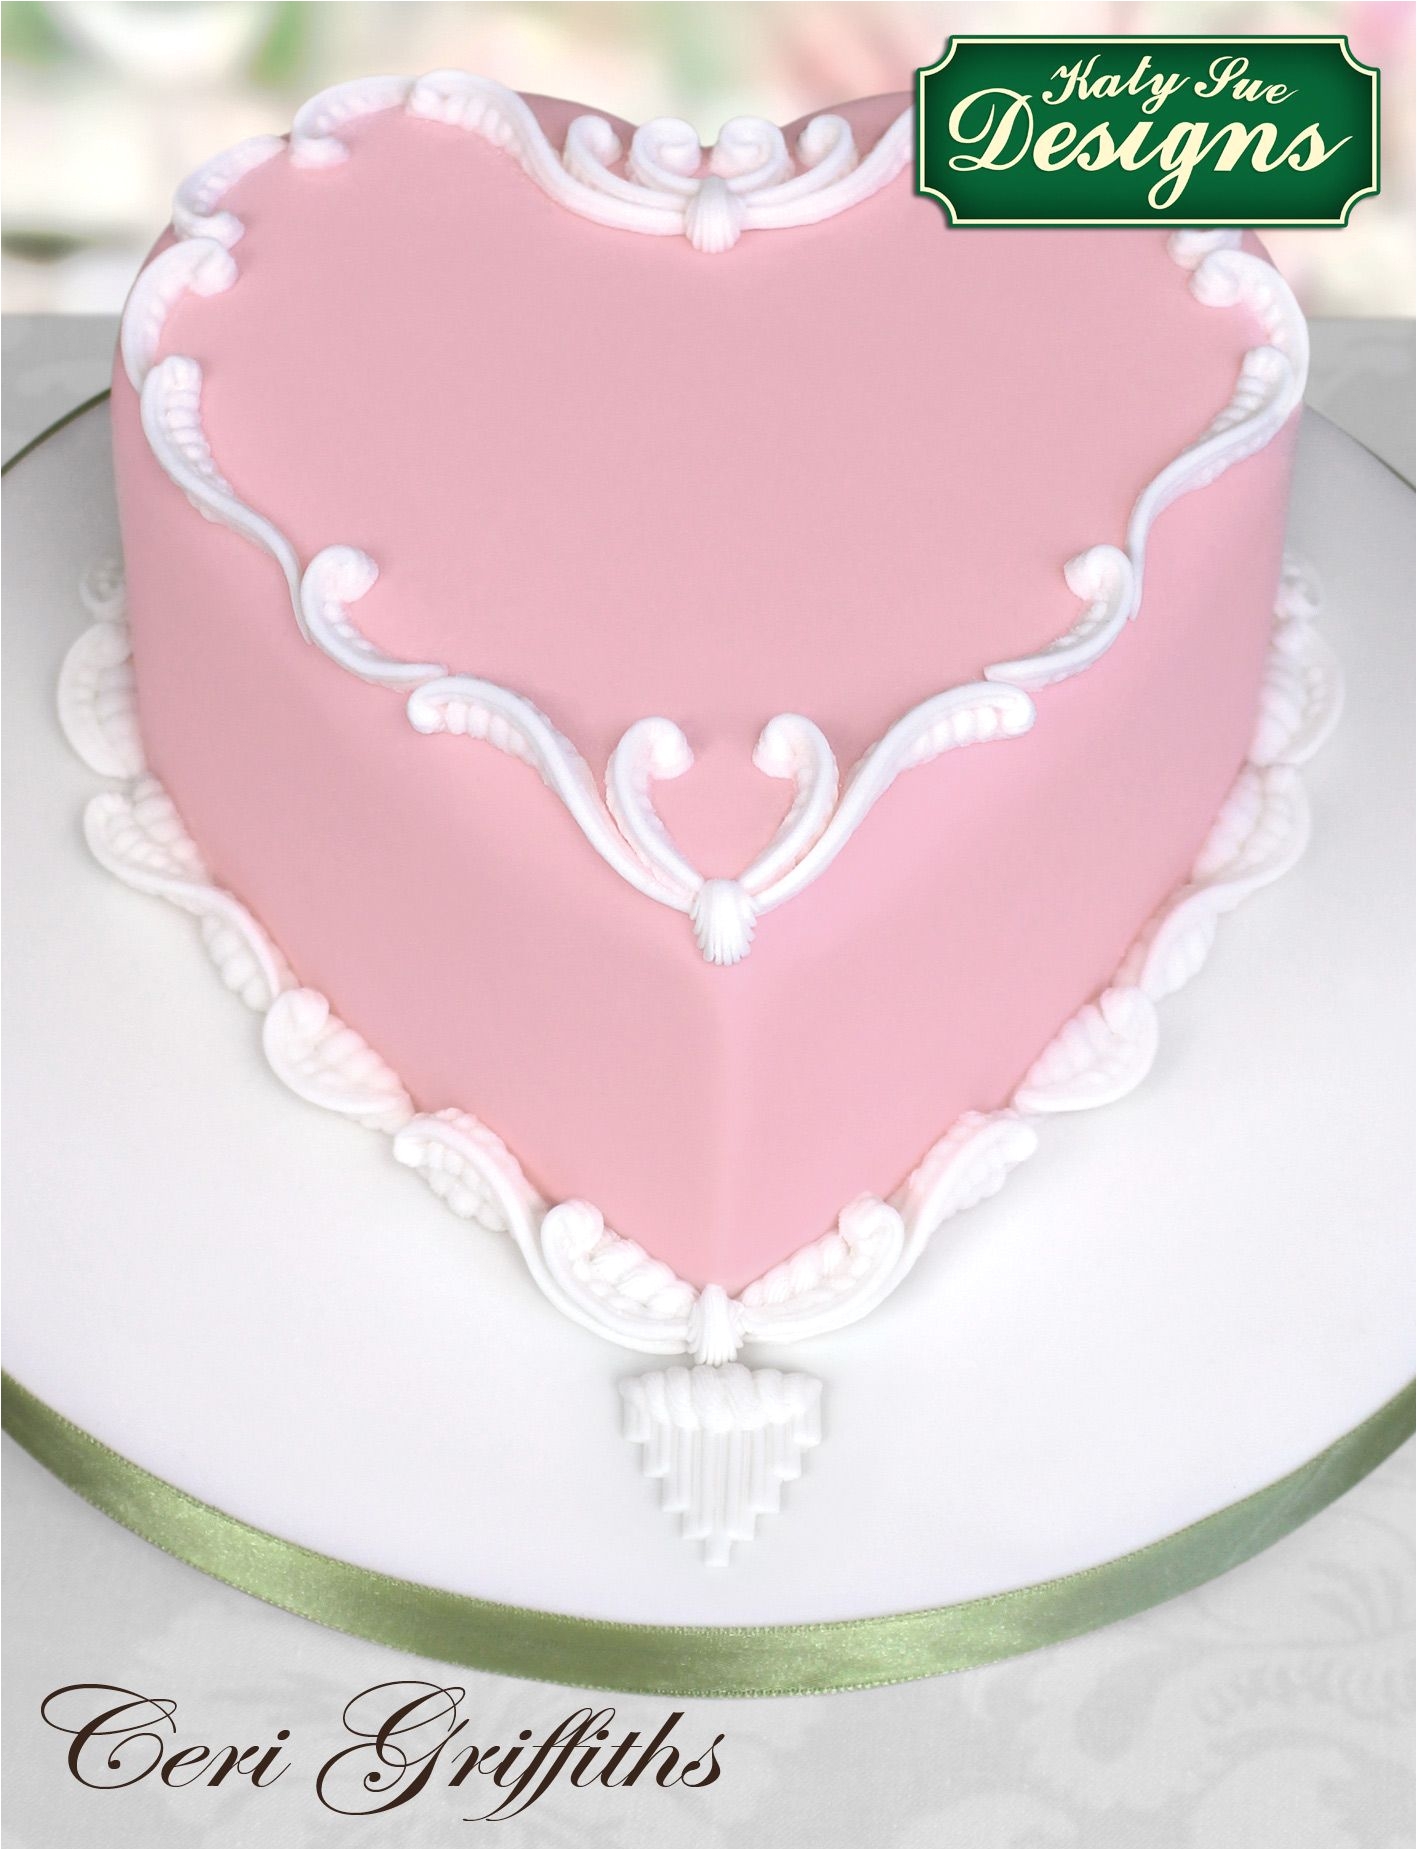 heart cakes heart shaped cakes nice cake valentine cake baby shower cakes amazing cakes birthday cakes cake ideas cake art